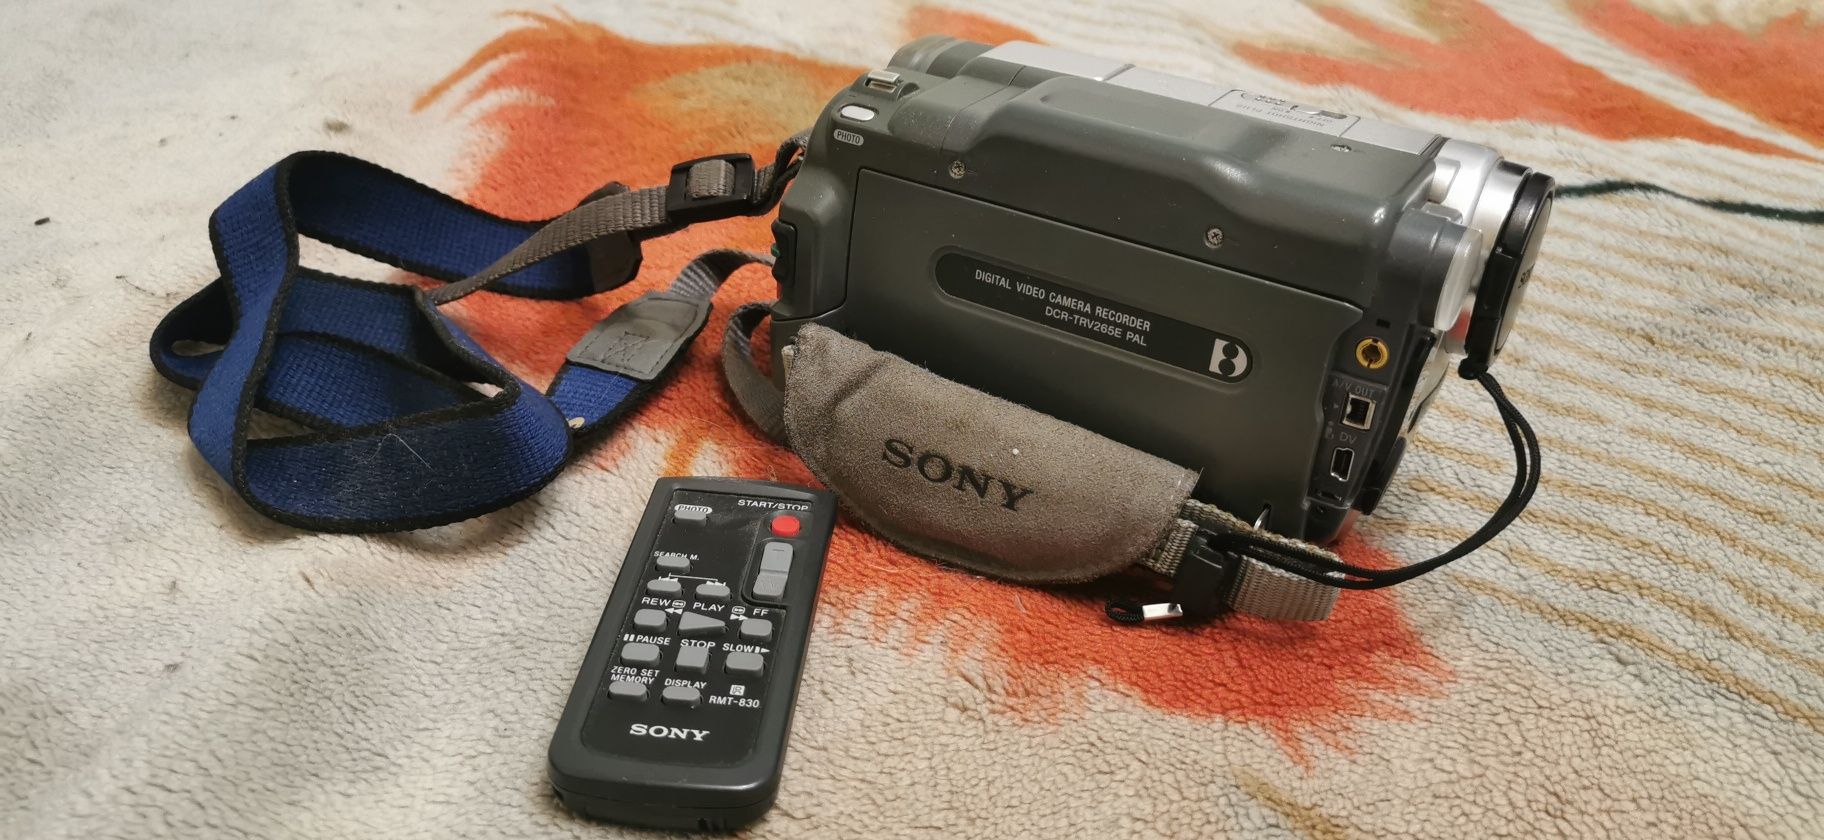 Відеокамера Sony DCR-TRV265E з сумкою